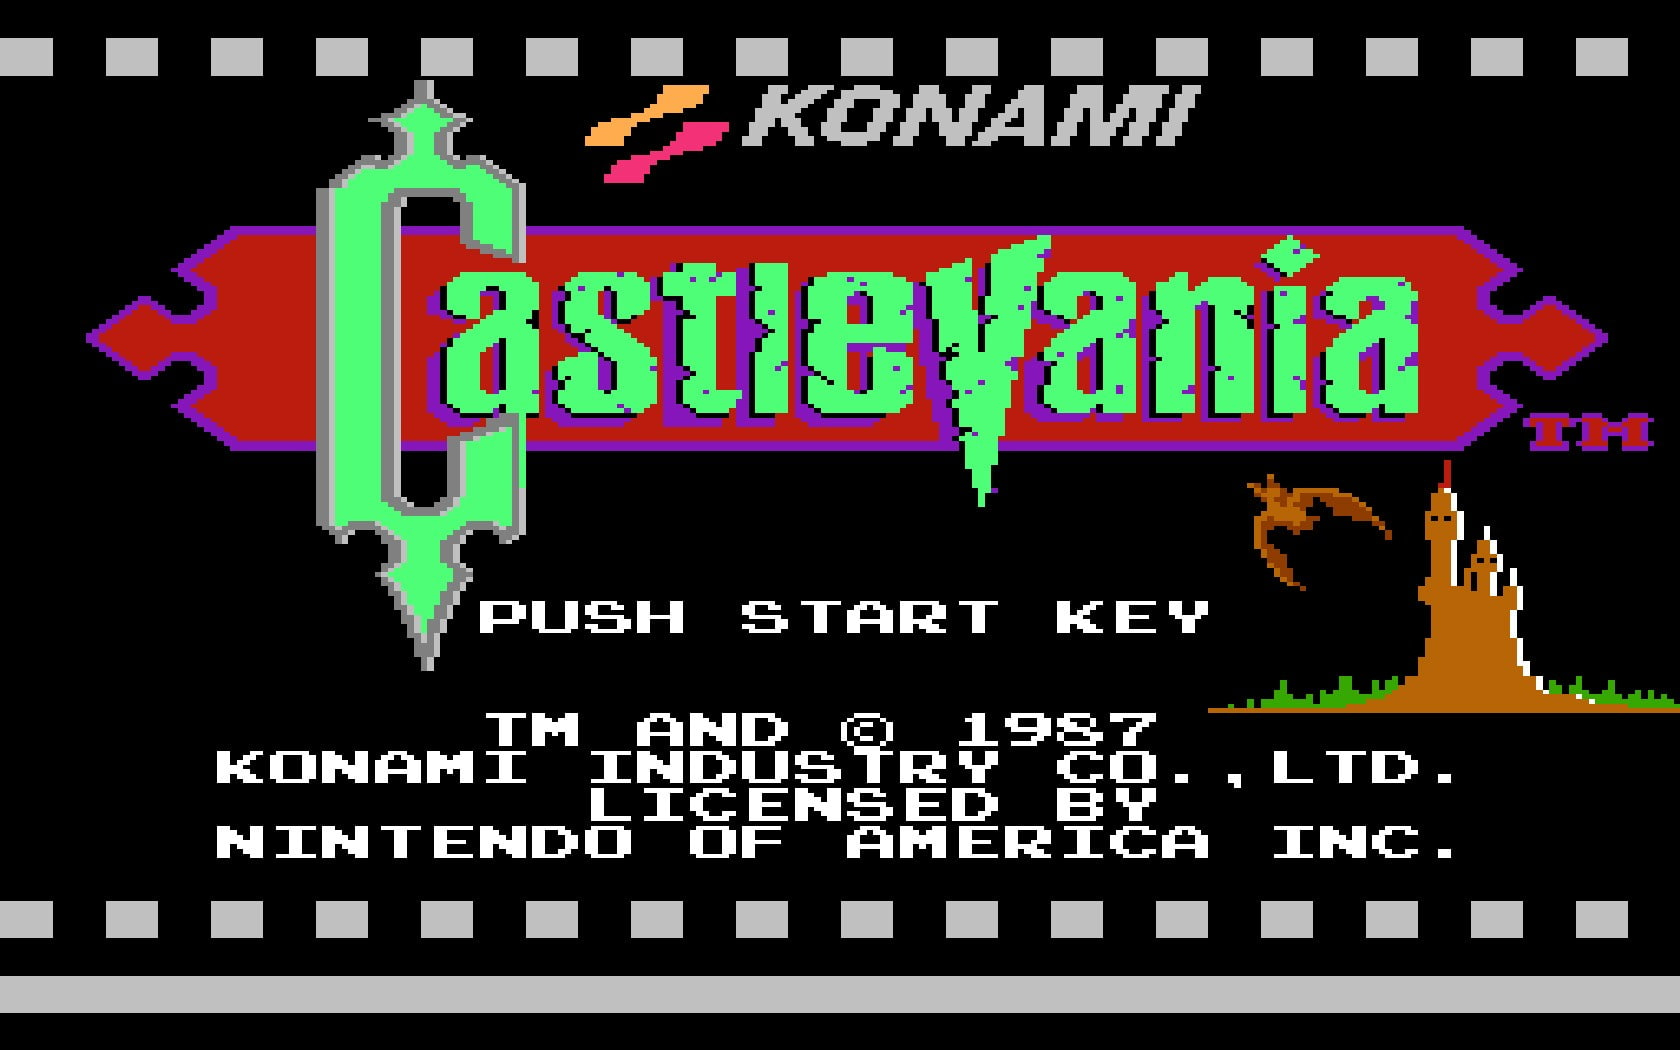 Wallpaper Castlevania Retro Games 8 Bit Konami